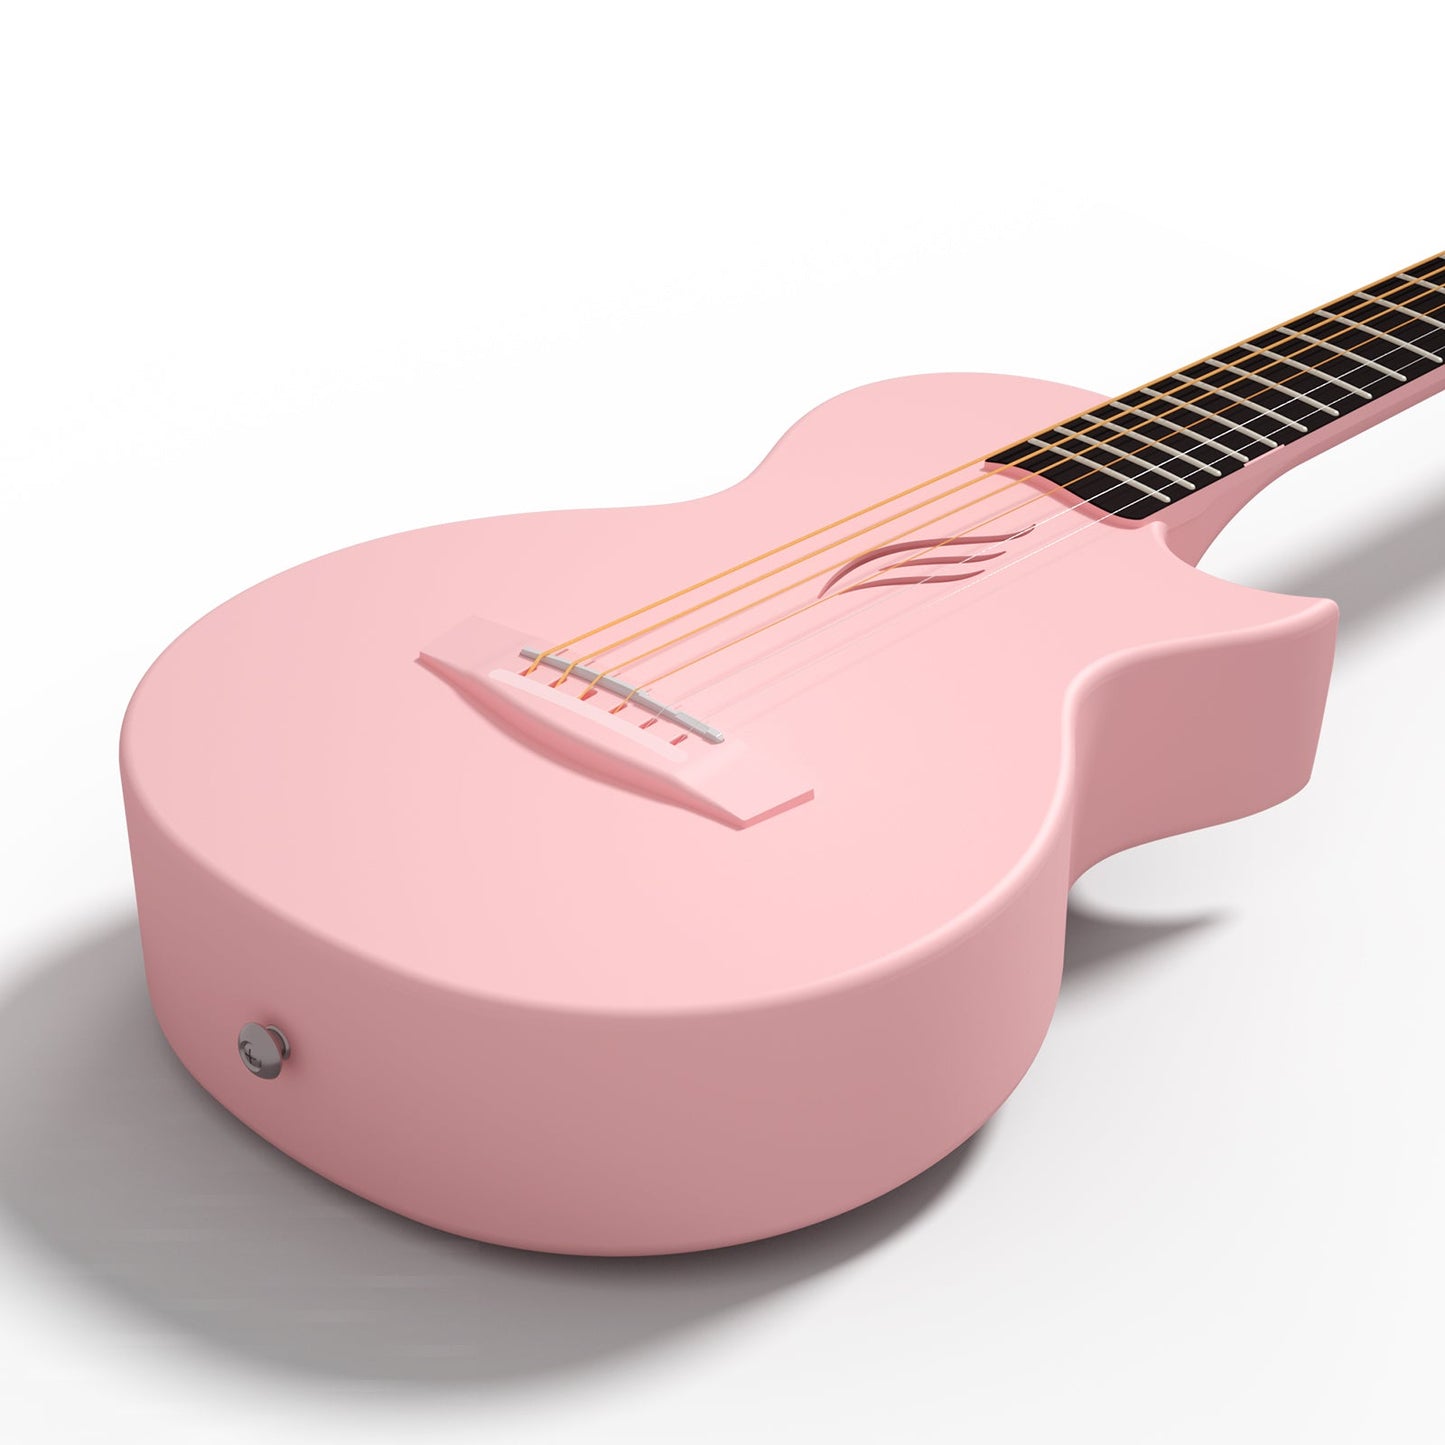 ENYA NOVA GO MINI Carbon Guitar Pink